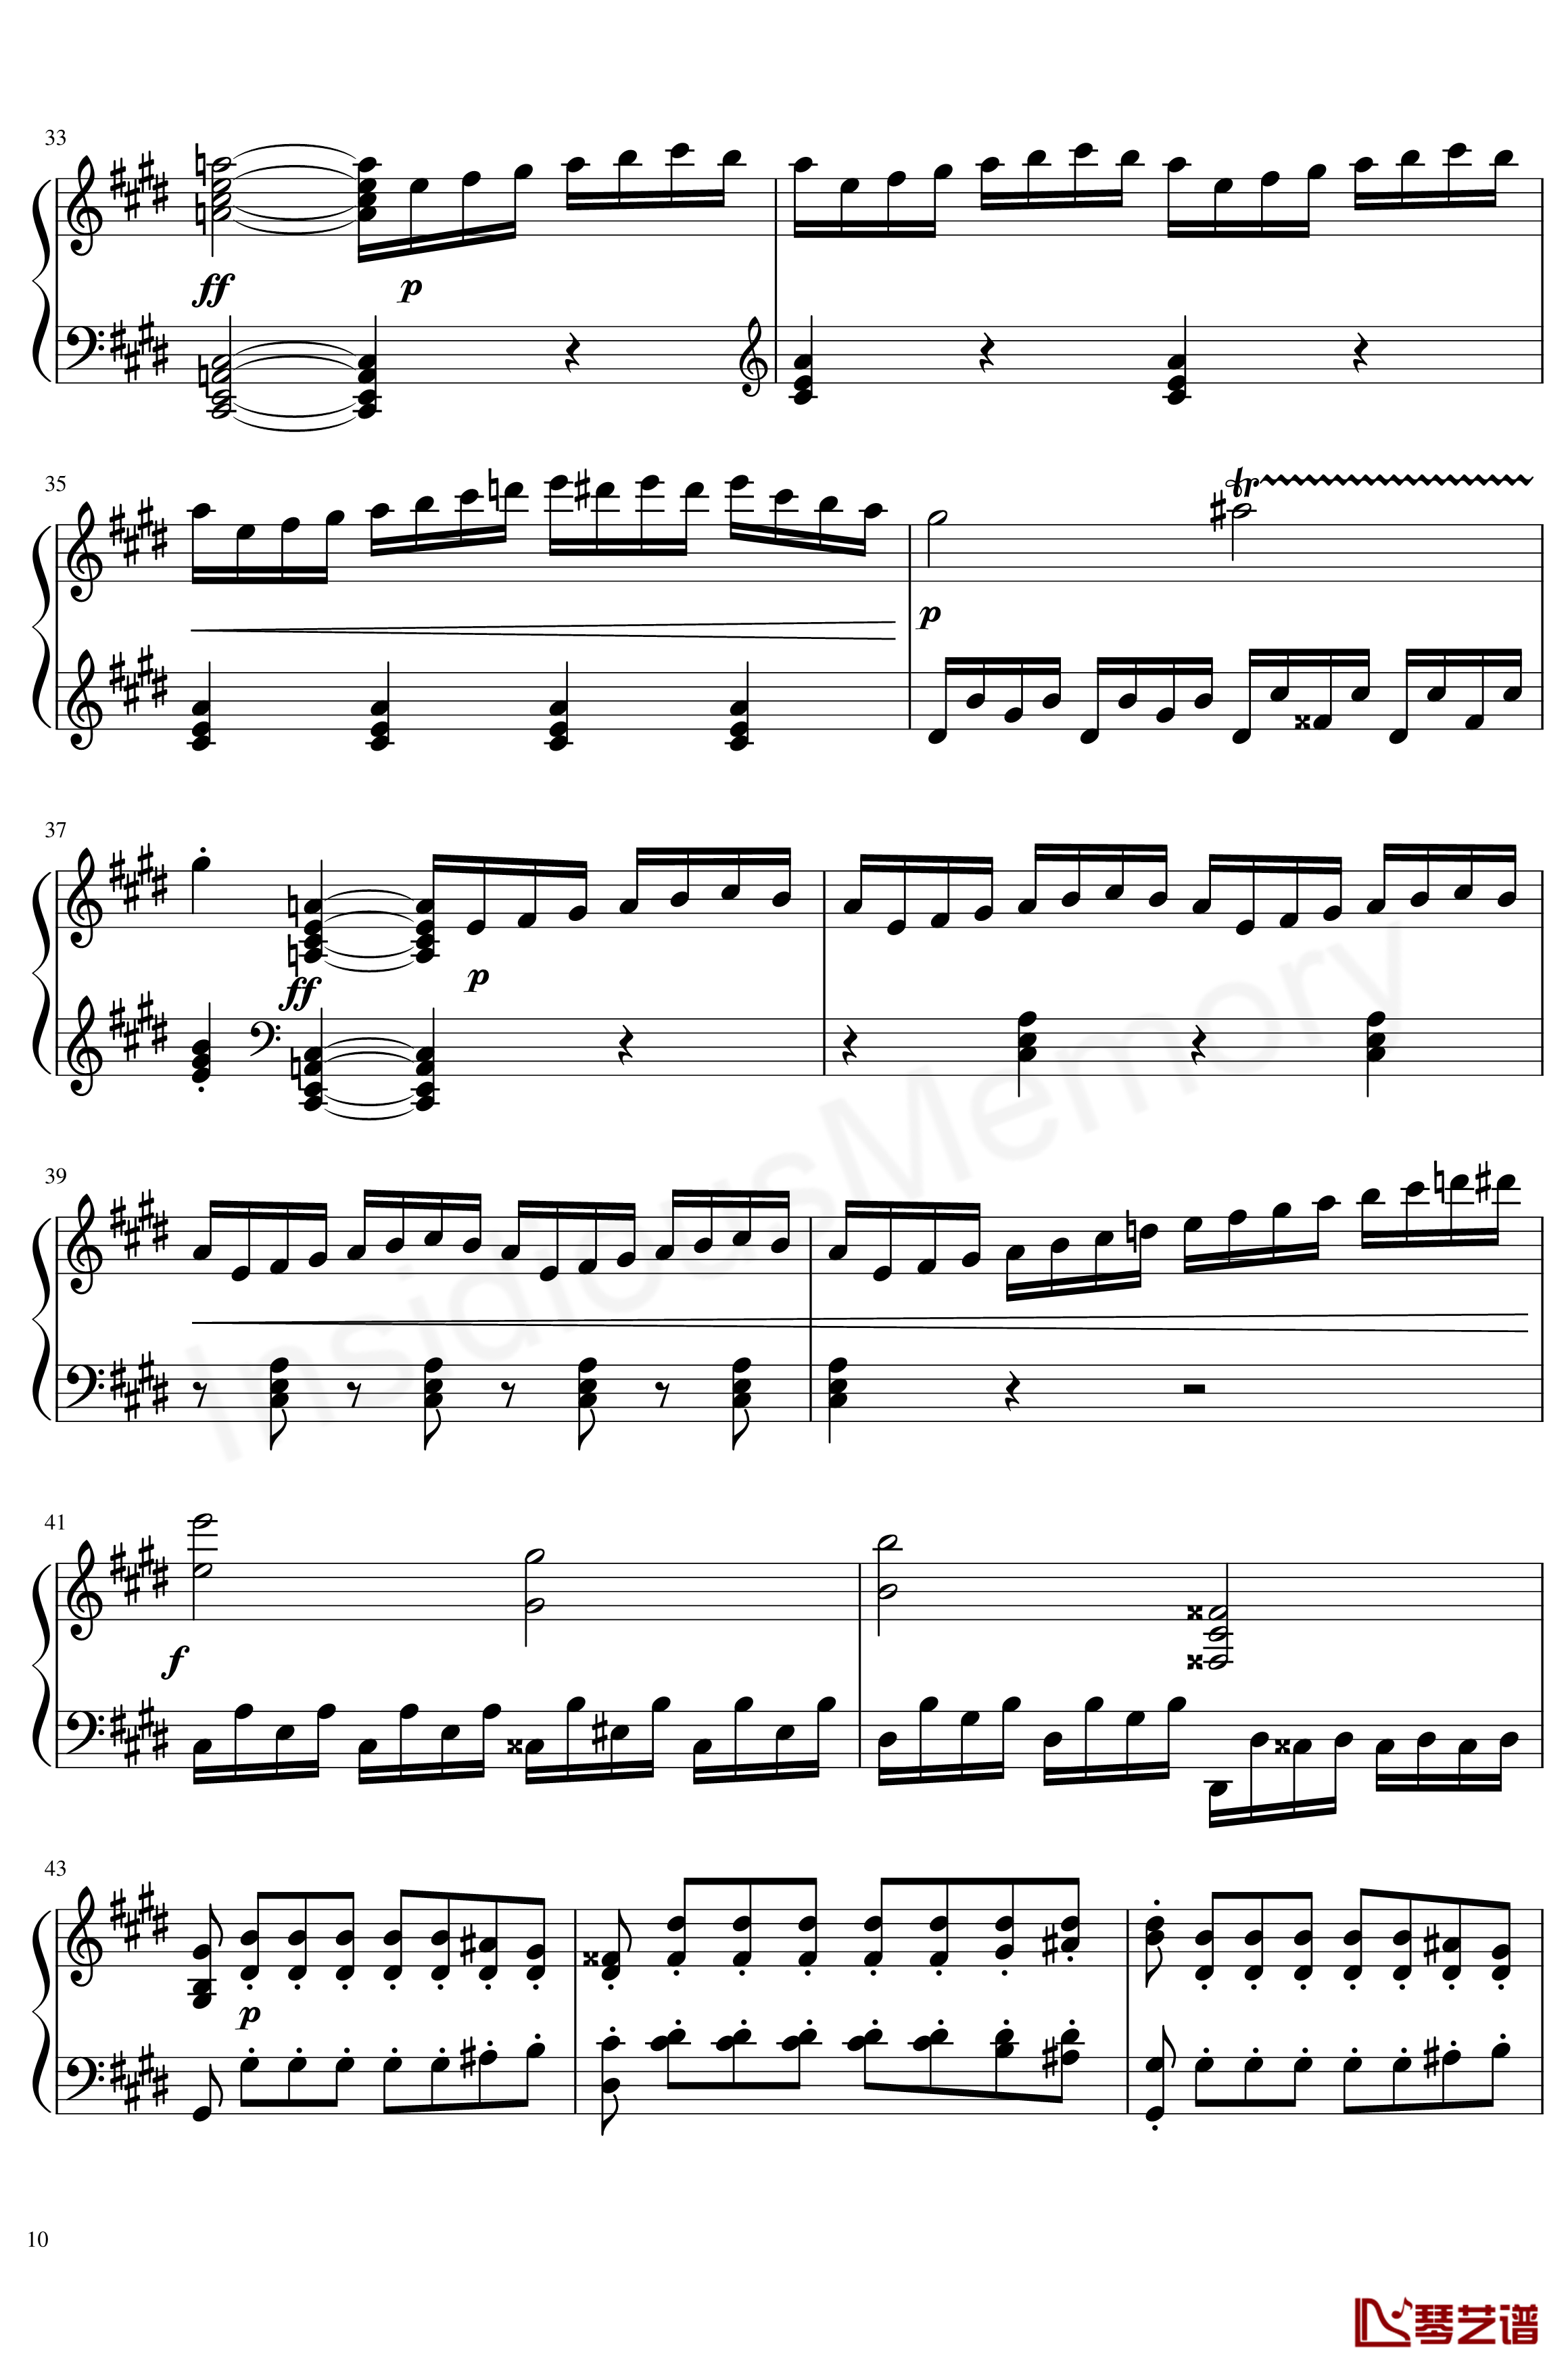 月光奏鸣曲钢琴谱-贝多芬-beethoven10